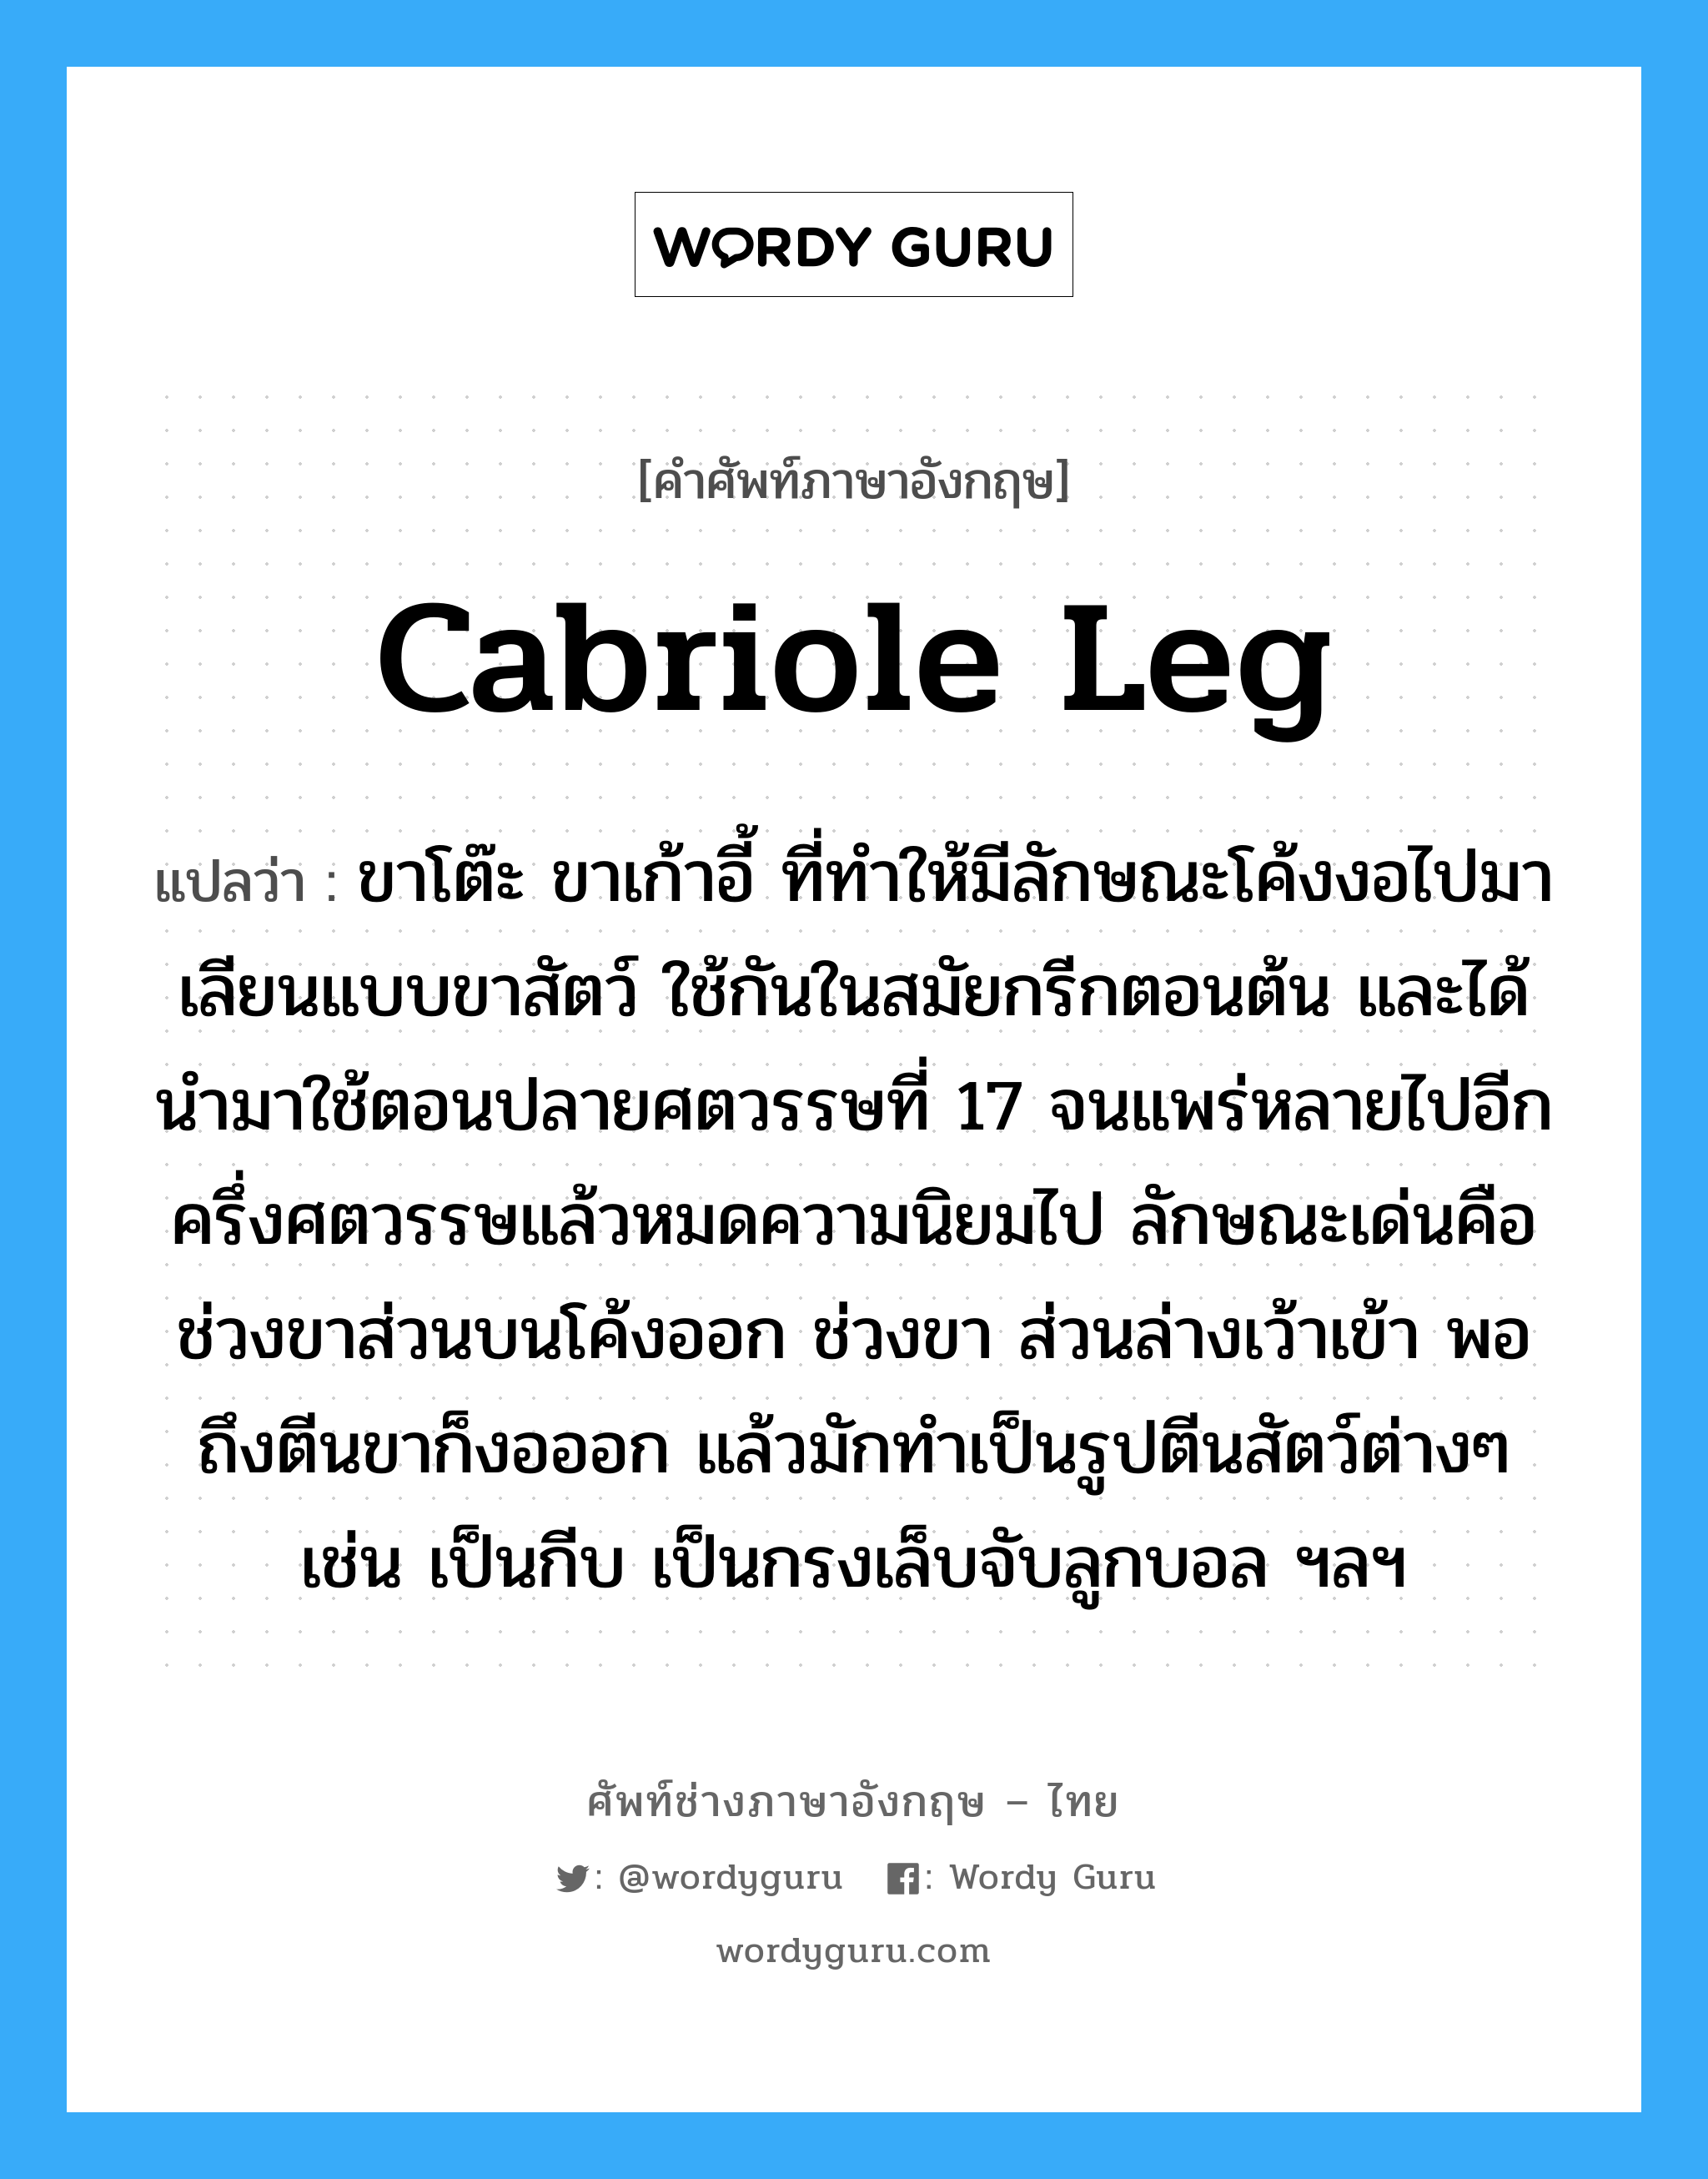 cabriole leg แปลว่า?, คำศัพท์ช่างภาษาอังกฤษ - ไทย cabriole leg คำศัพท์ภาษาอังกฤษ cabriole leg แปลว่า ขาโต๊ะ ขาเก้าอี้ ที่ทำให้มีลักษณะโค้งงอไปมา เลียนแบบขาสัตว์ ใช้กันในสมัยกรีกตอนต้น และได้นำมาใช้ตอนปลายศตวรรษที่ 17 จนแพร่หลายไปอีกครึ่งศตวรรษแล้วหมดความนิยมไป ลักษณะเด่นคือช่วงขาส่วนบนโค้งออก ช่วงขา ส่วนล่างเว้าเข้า พอถึงตีนขาก็งอออก แล้วมักทำเป็นรูปตีนสัตว์ต่างๆ เช่น เป็นกีบ เป็นกรงเล็บจับลูกบอล ฯลฯ